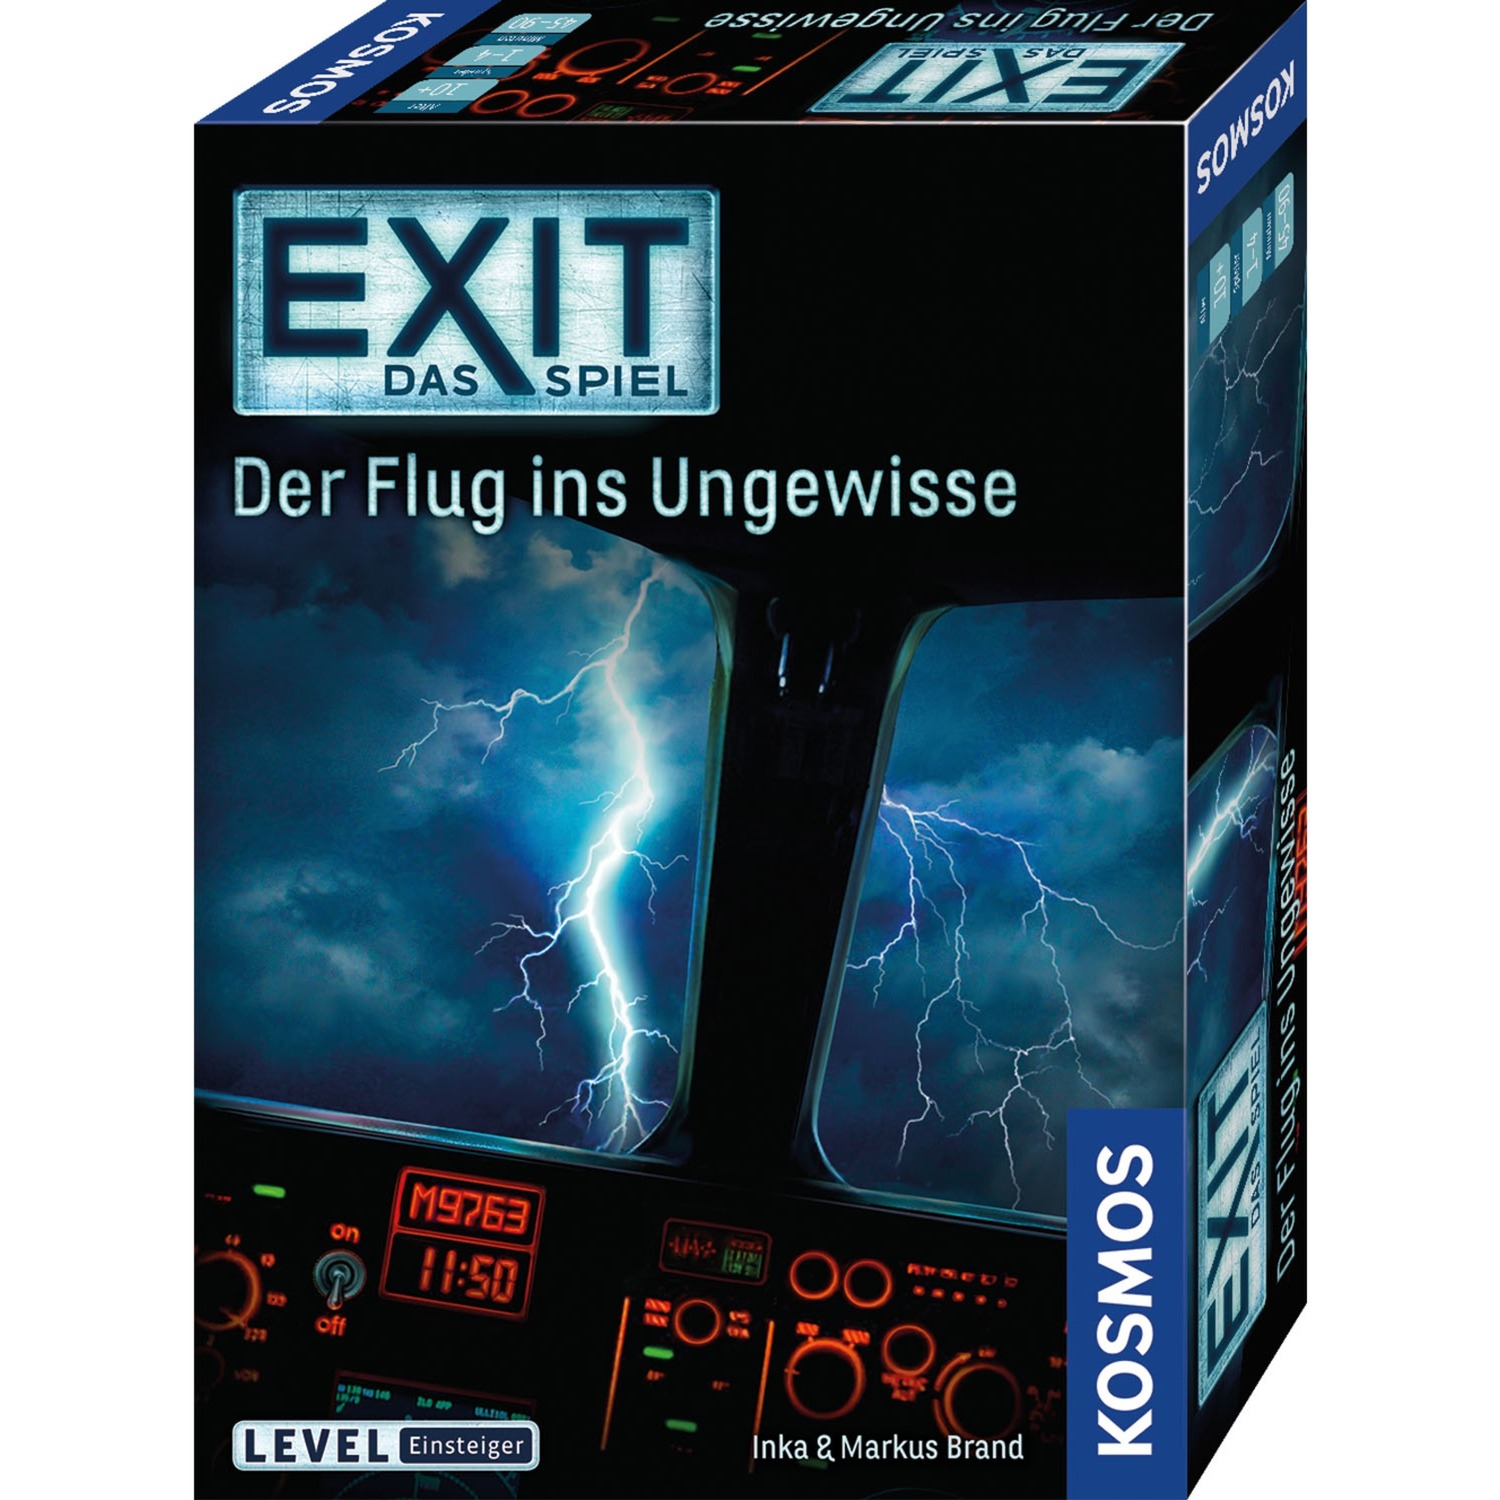 Image of Alternate - EXIT - Das Spiel - Der Flug ins Ungewisse, Partyspiel online einkaufen bei Alternate